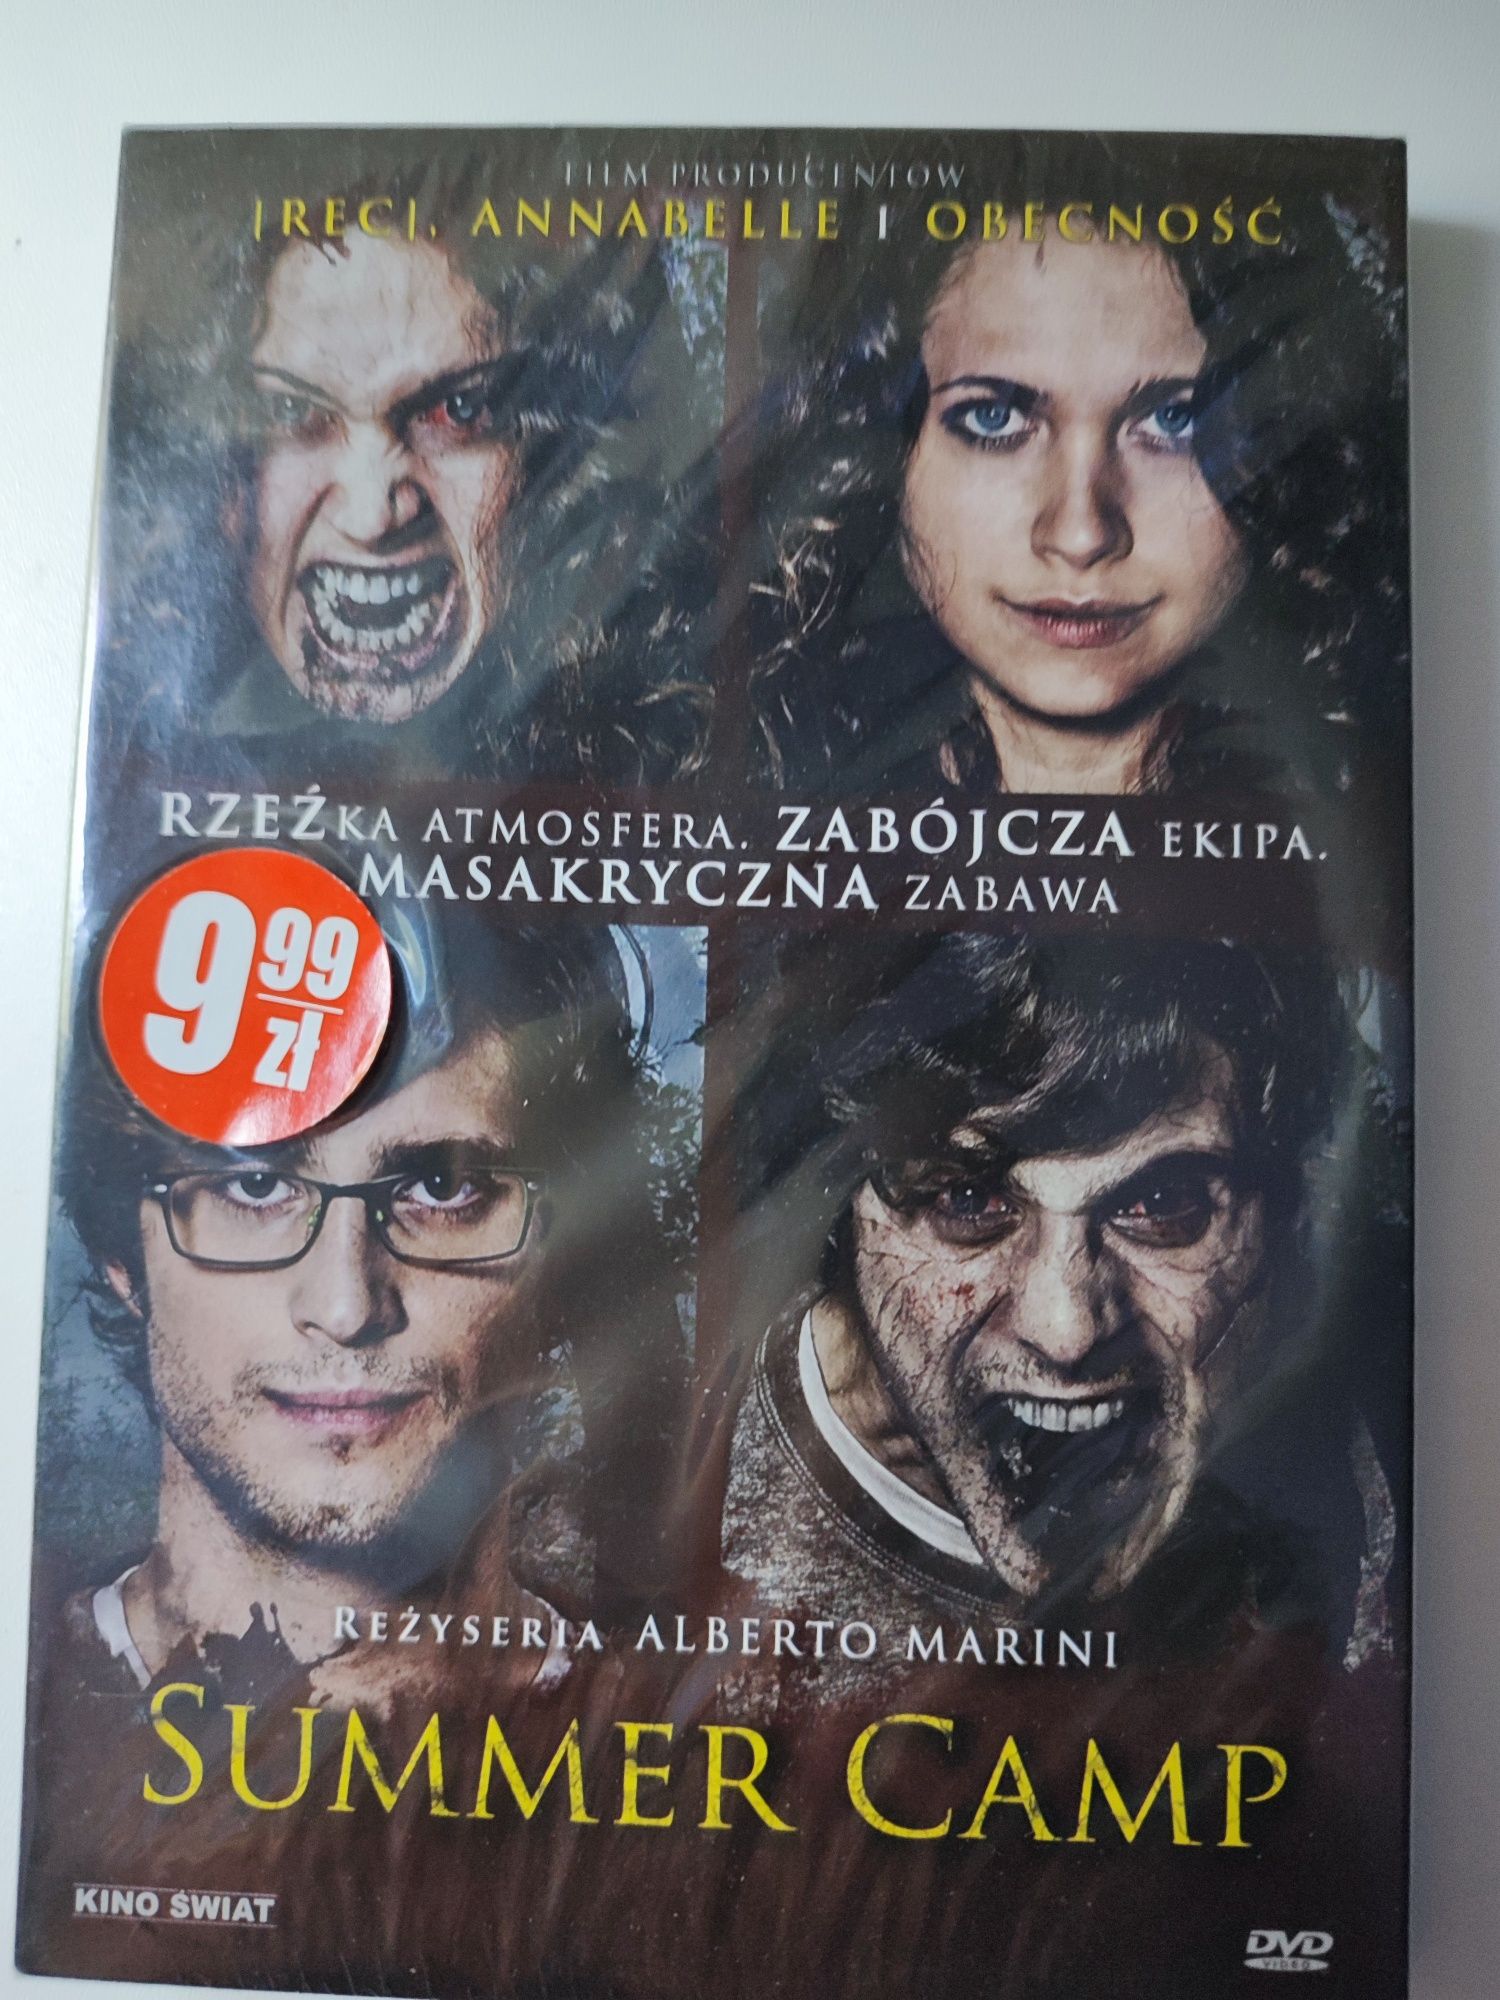 Film DVD "Summer Camp" w folii